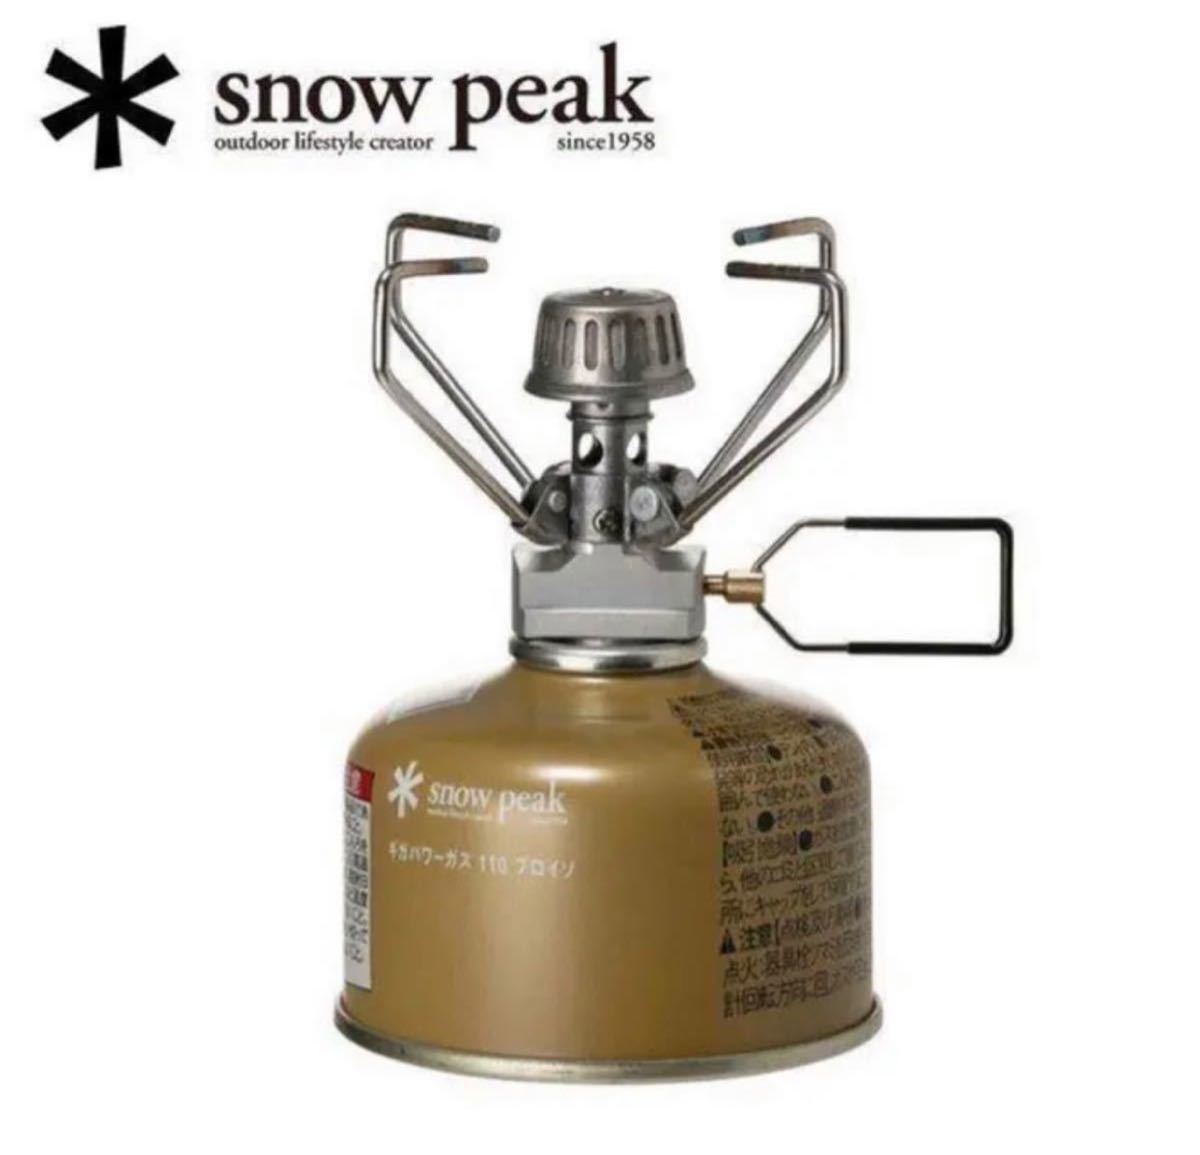 スノーピーク シングルバーナー ギガパワーストーブ 地 GS-100R2 snow peak (キャンプ アウトドア用品) 